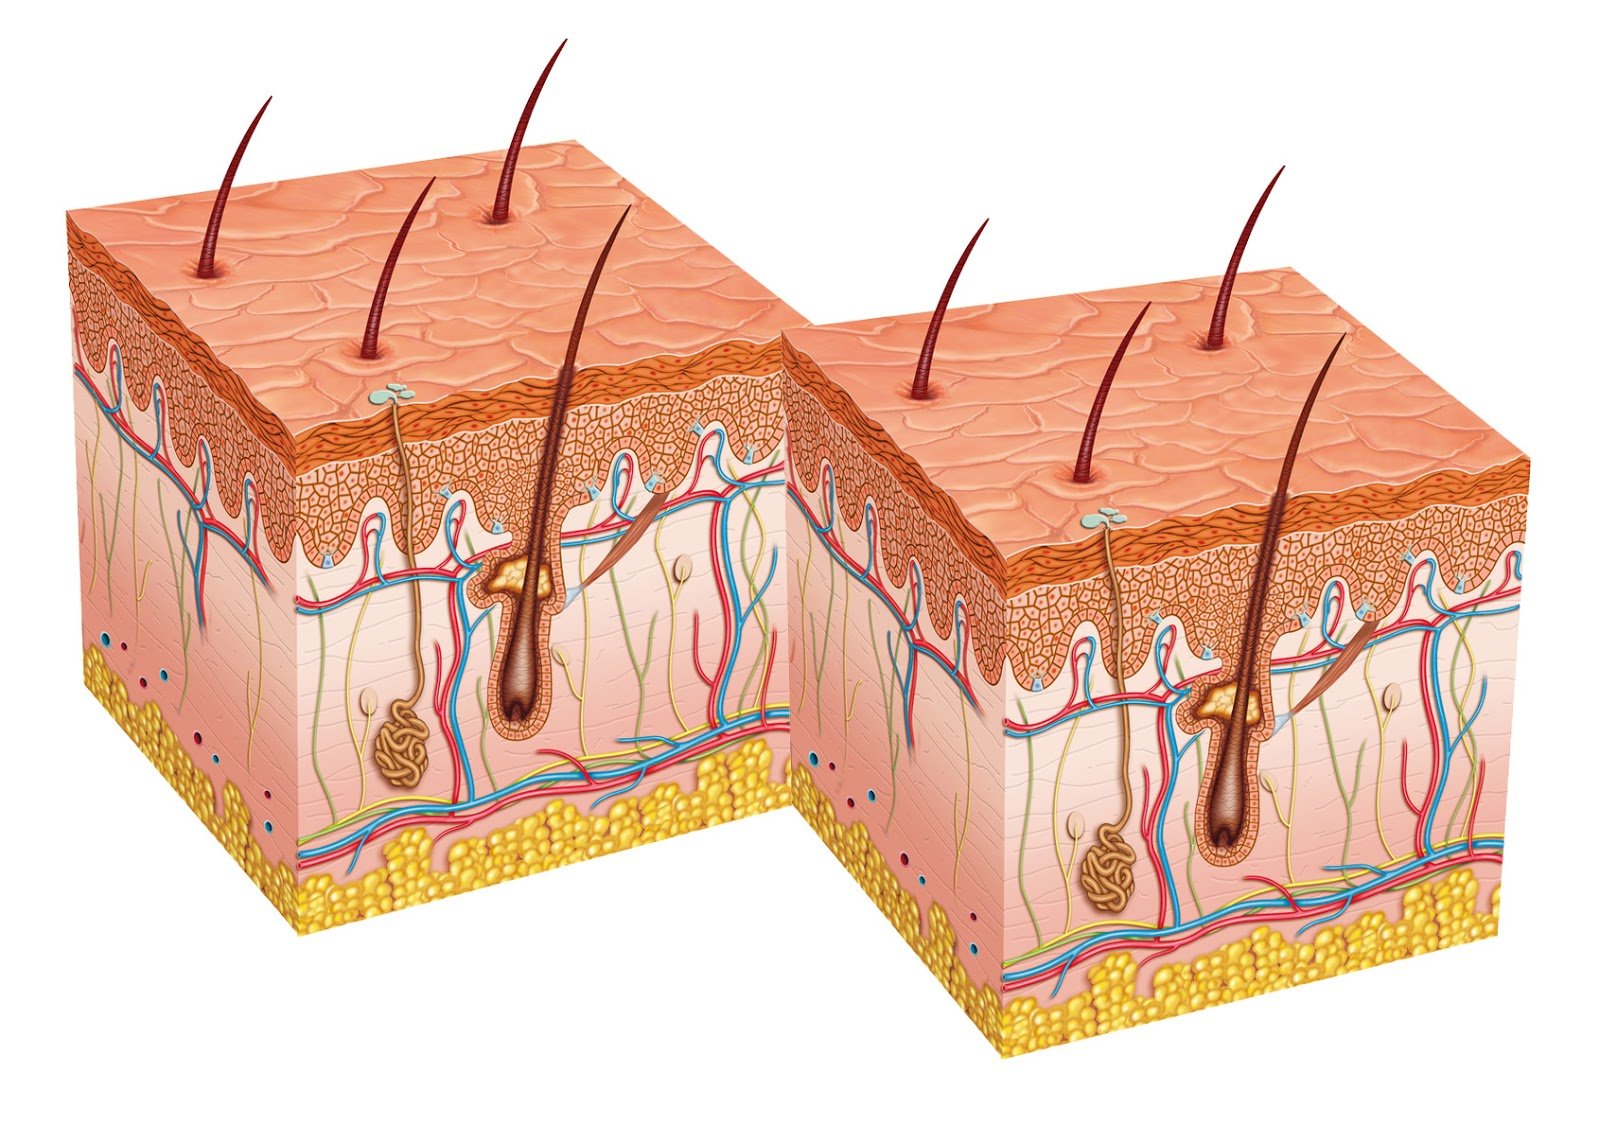 Корень волоса клетки